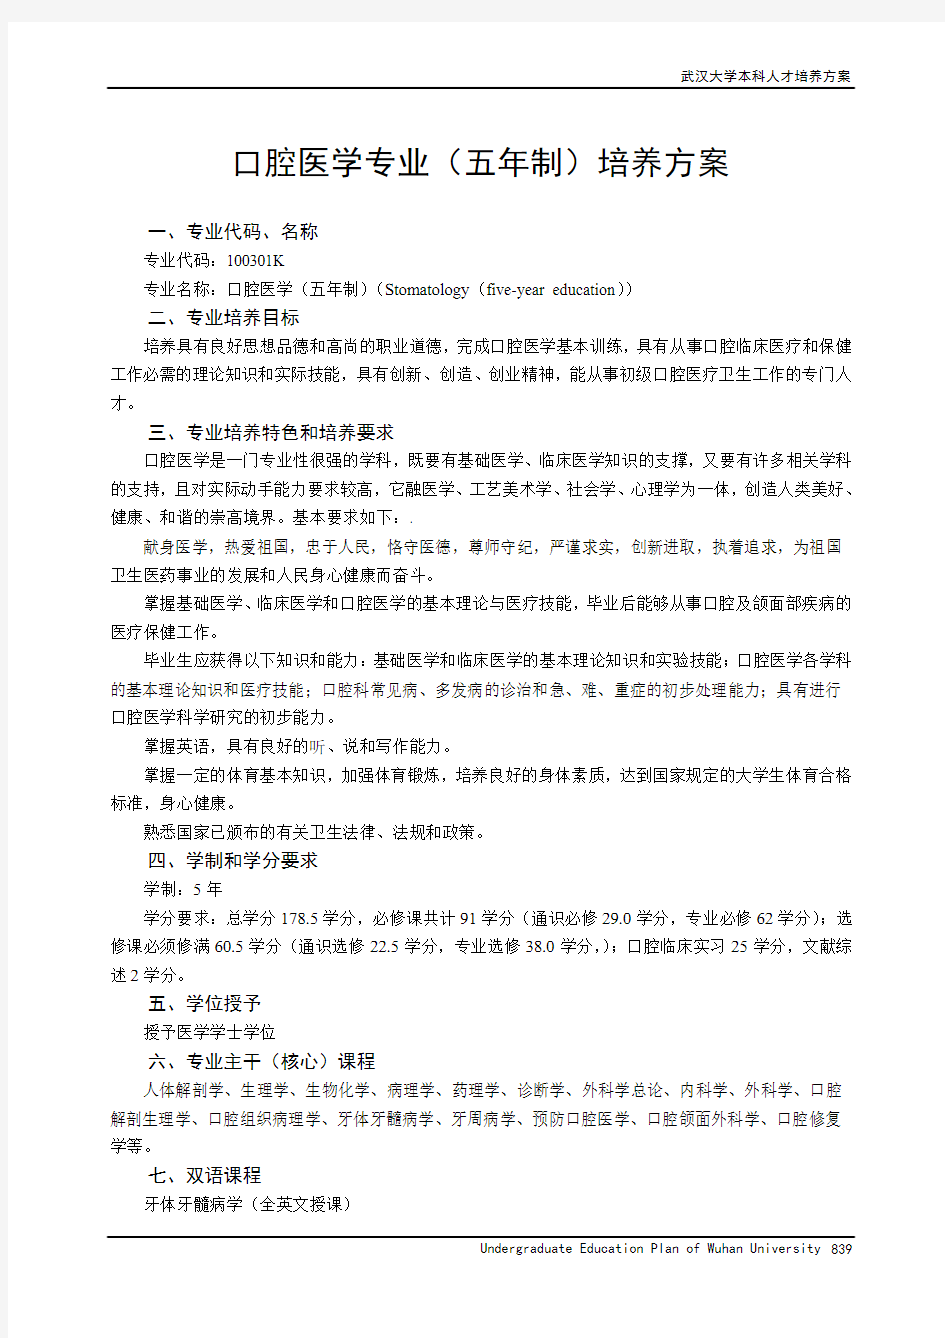 武汉大学口腔医学院人才培养方案(2013版)